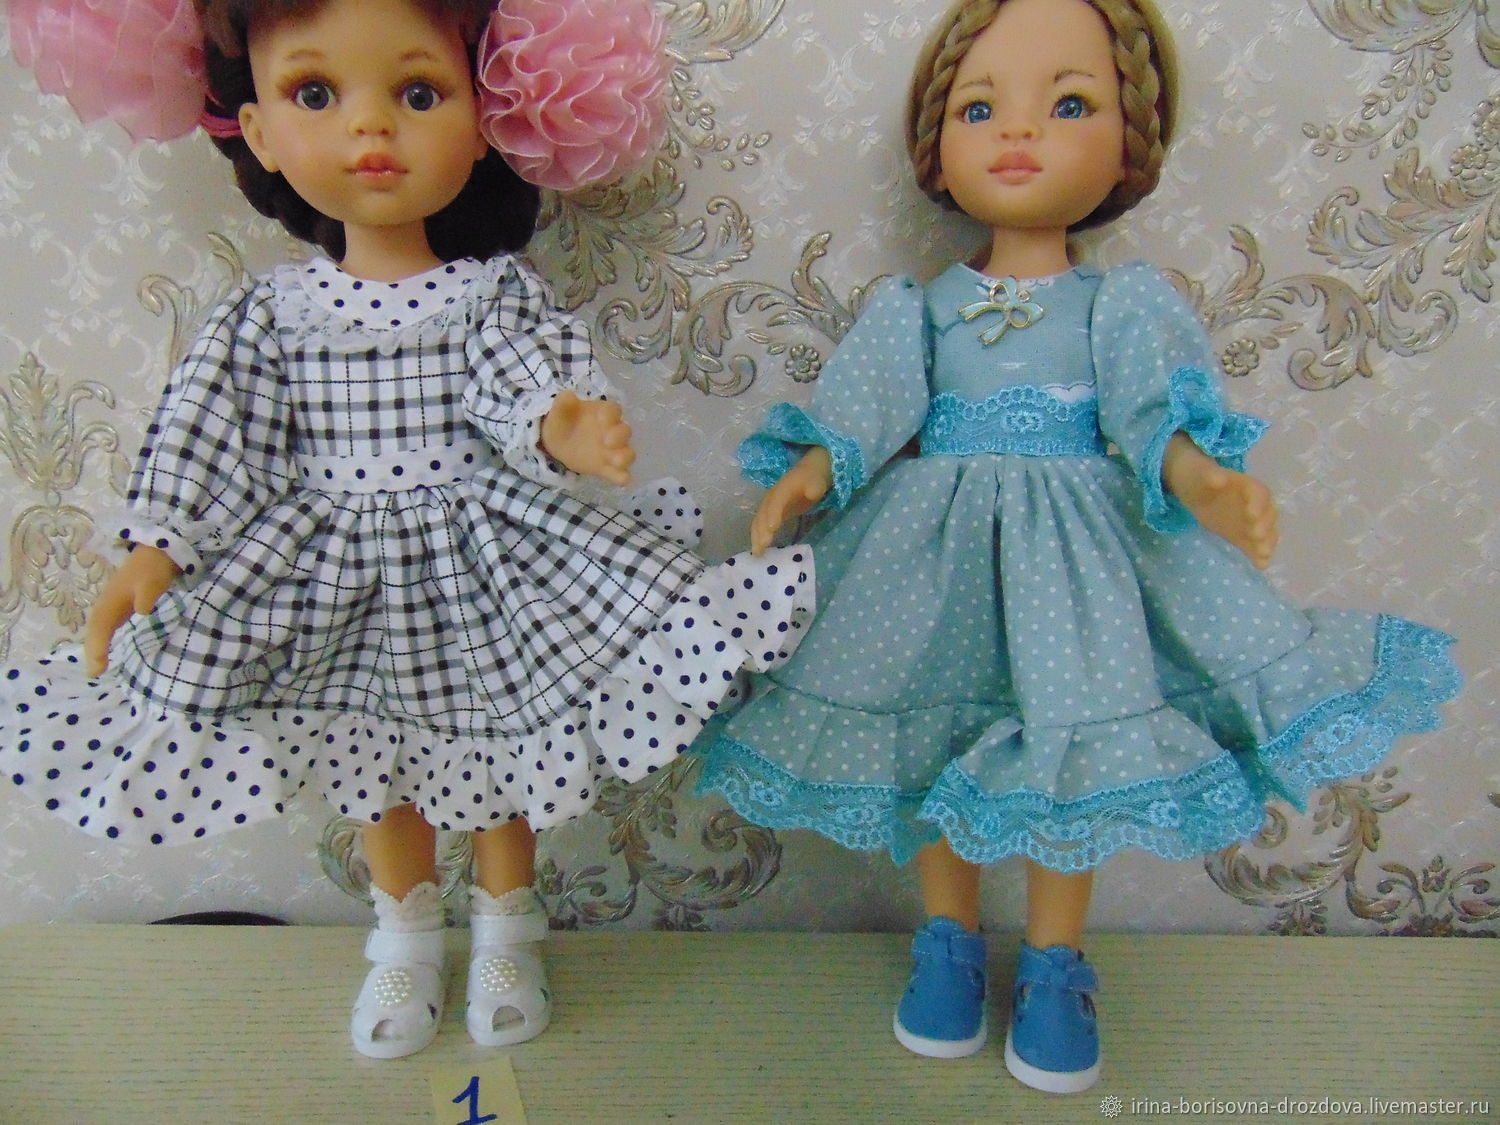 Платье для средней куклы. Платья для кукол. Модели платьев для кукол. Нарядные платья для кукол. Платье в горошек для куклы.